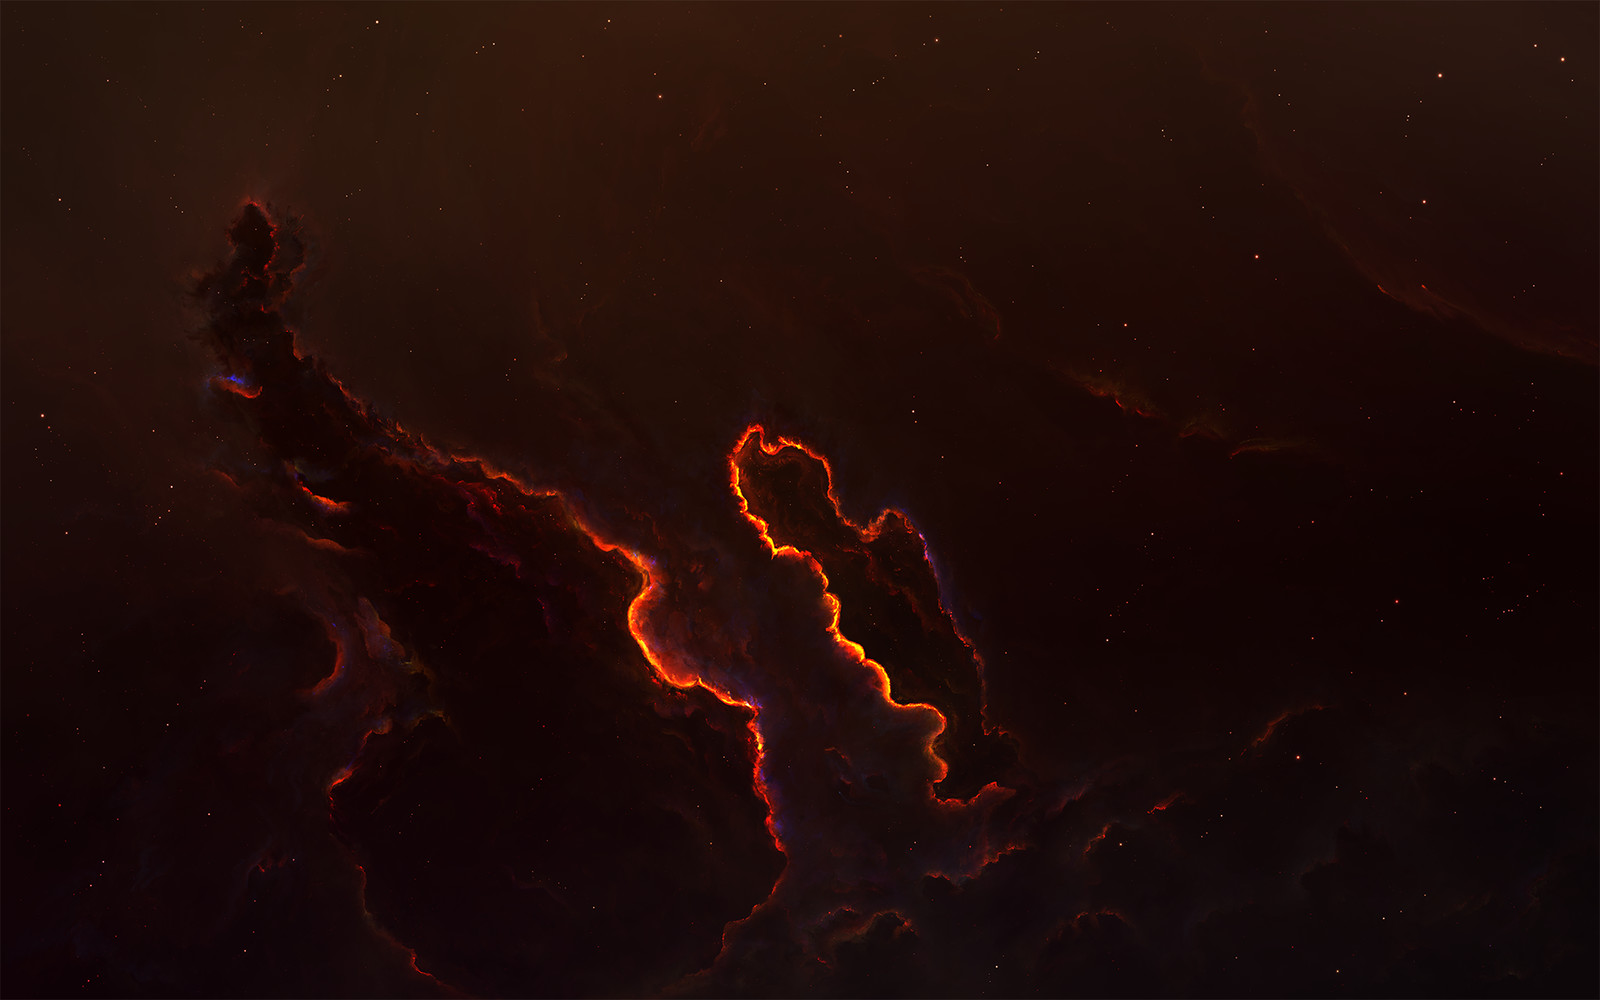 Akrino Nebula